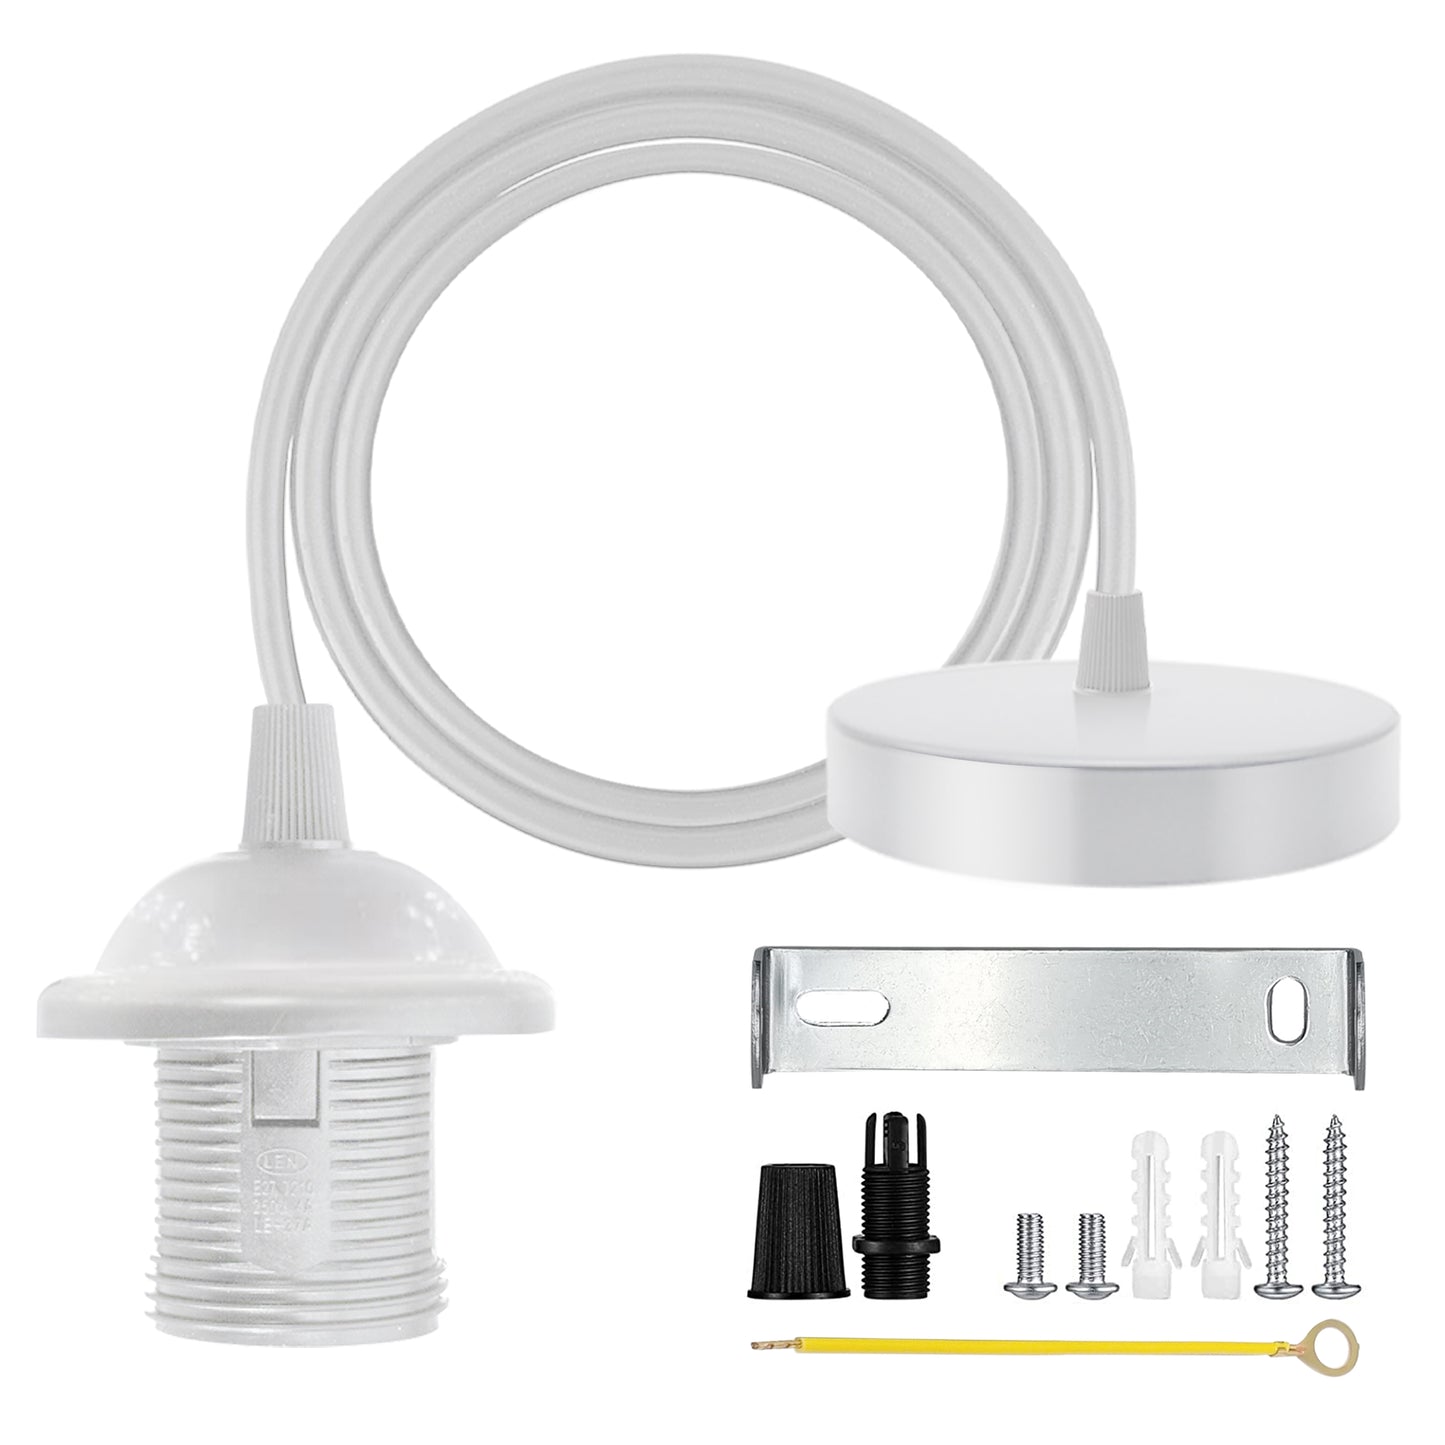 Industrial white color Pendant light holder